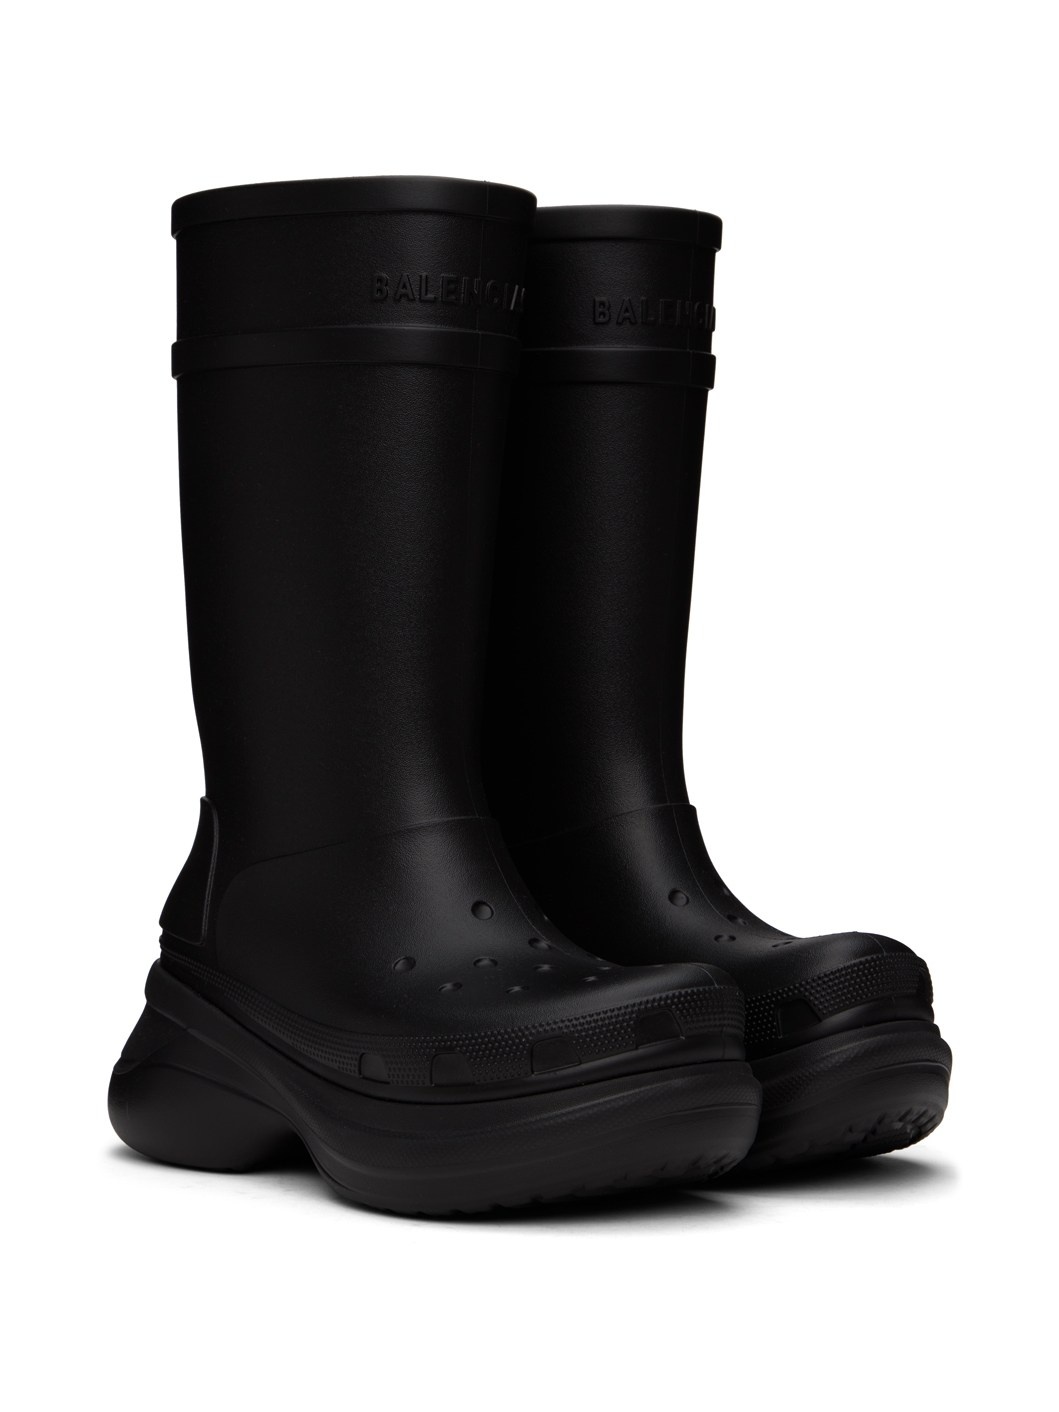 Black Crocs Edition Boots - 4